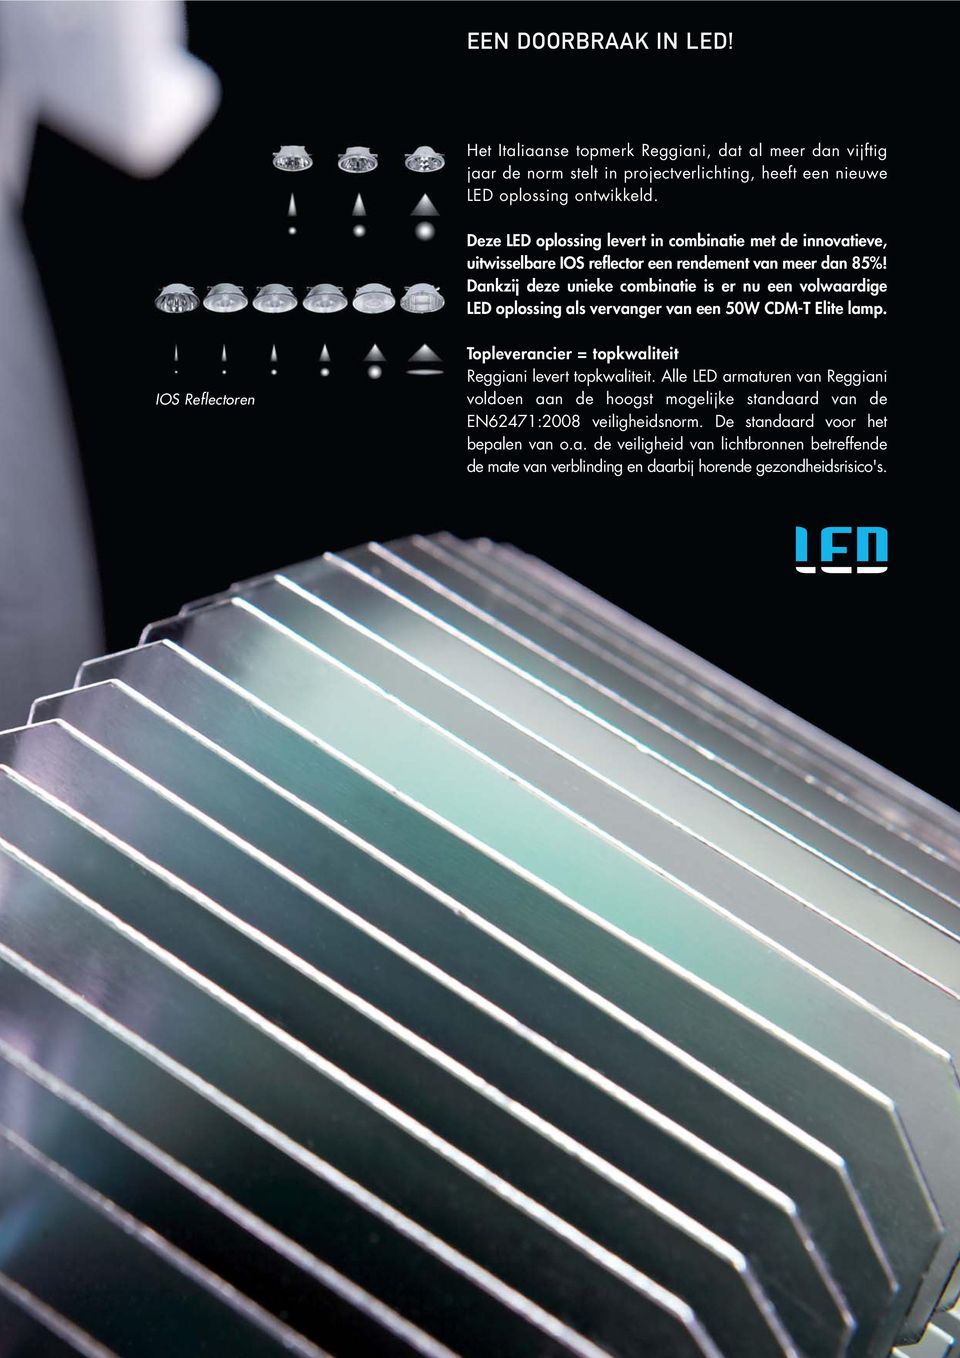 Dankzij deze unieke combinatie is er nu een volwaardige LED oplossing als vervanger van een 50W CDM-T Elite lamp.